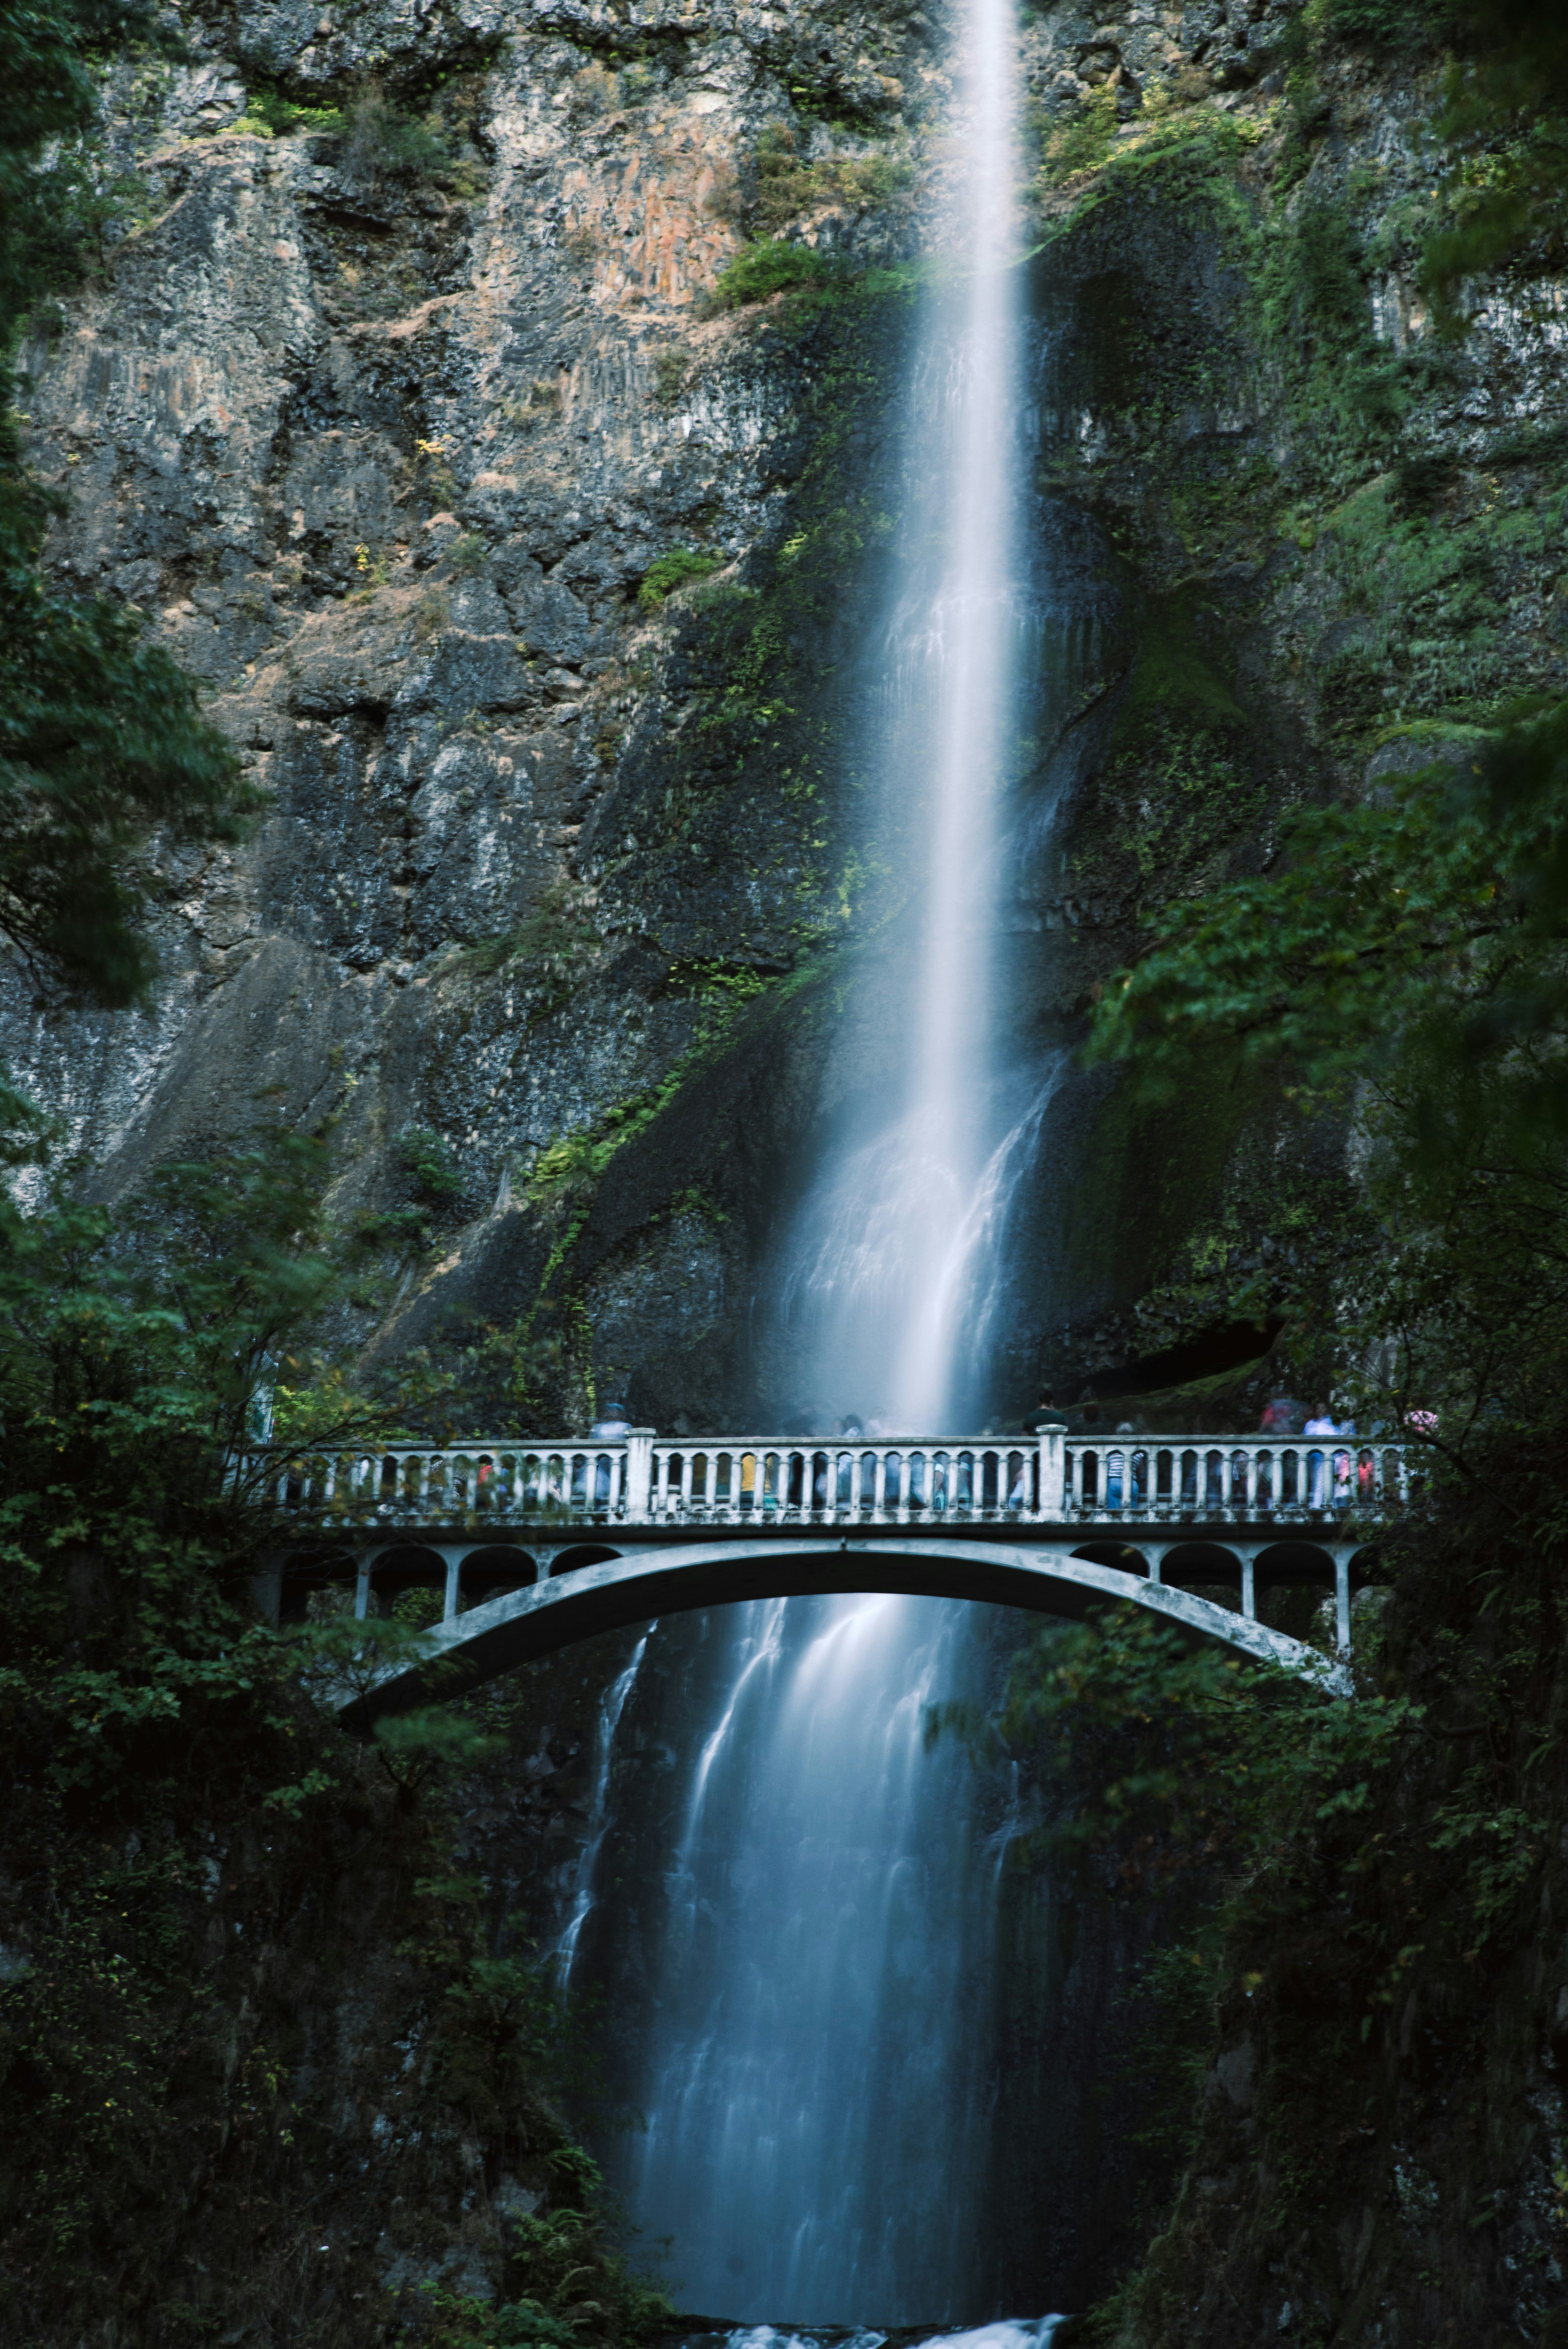 bridge over waterfalls during daytime